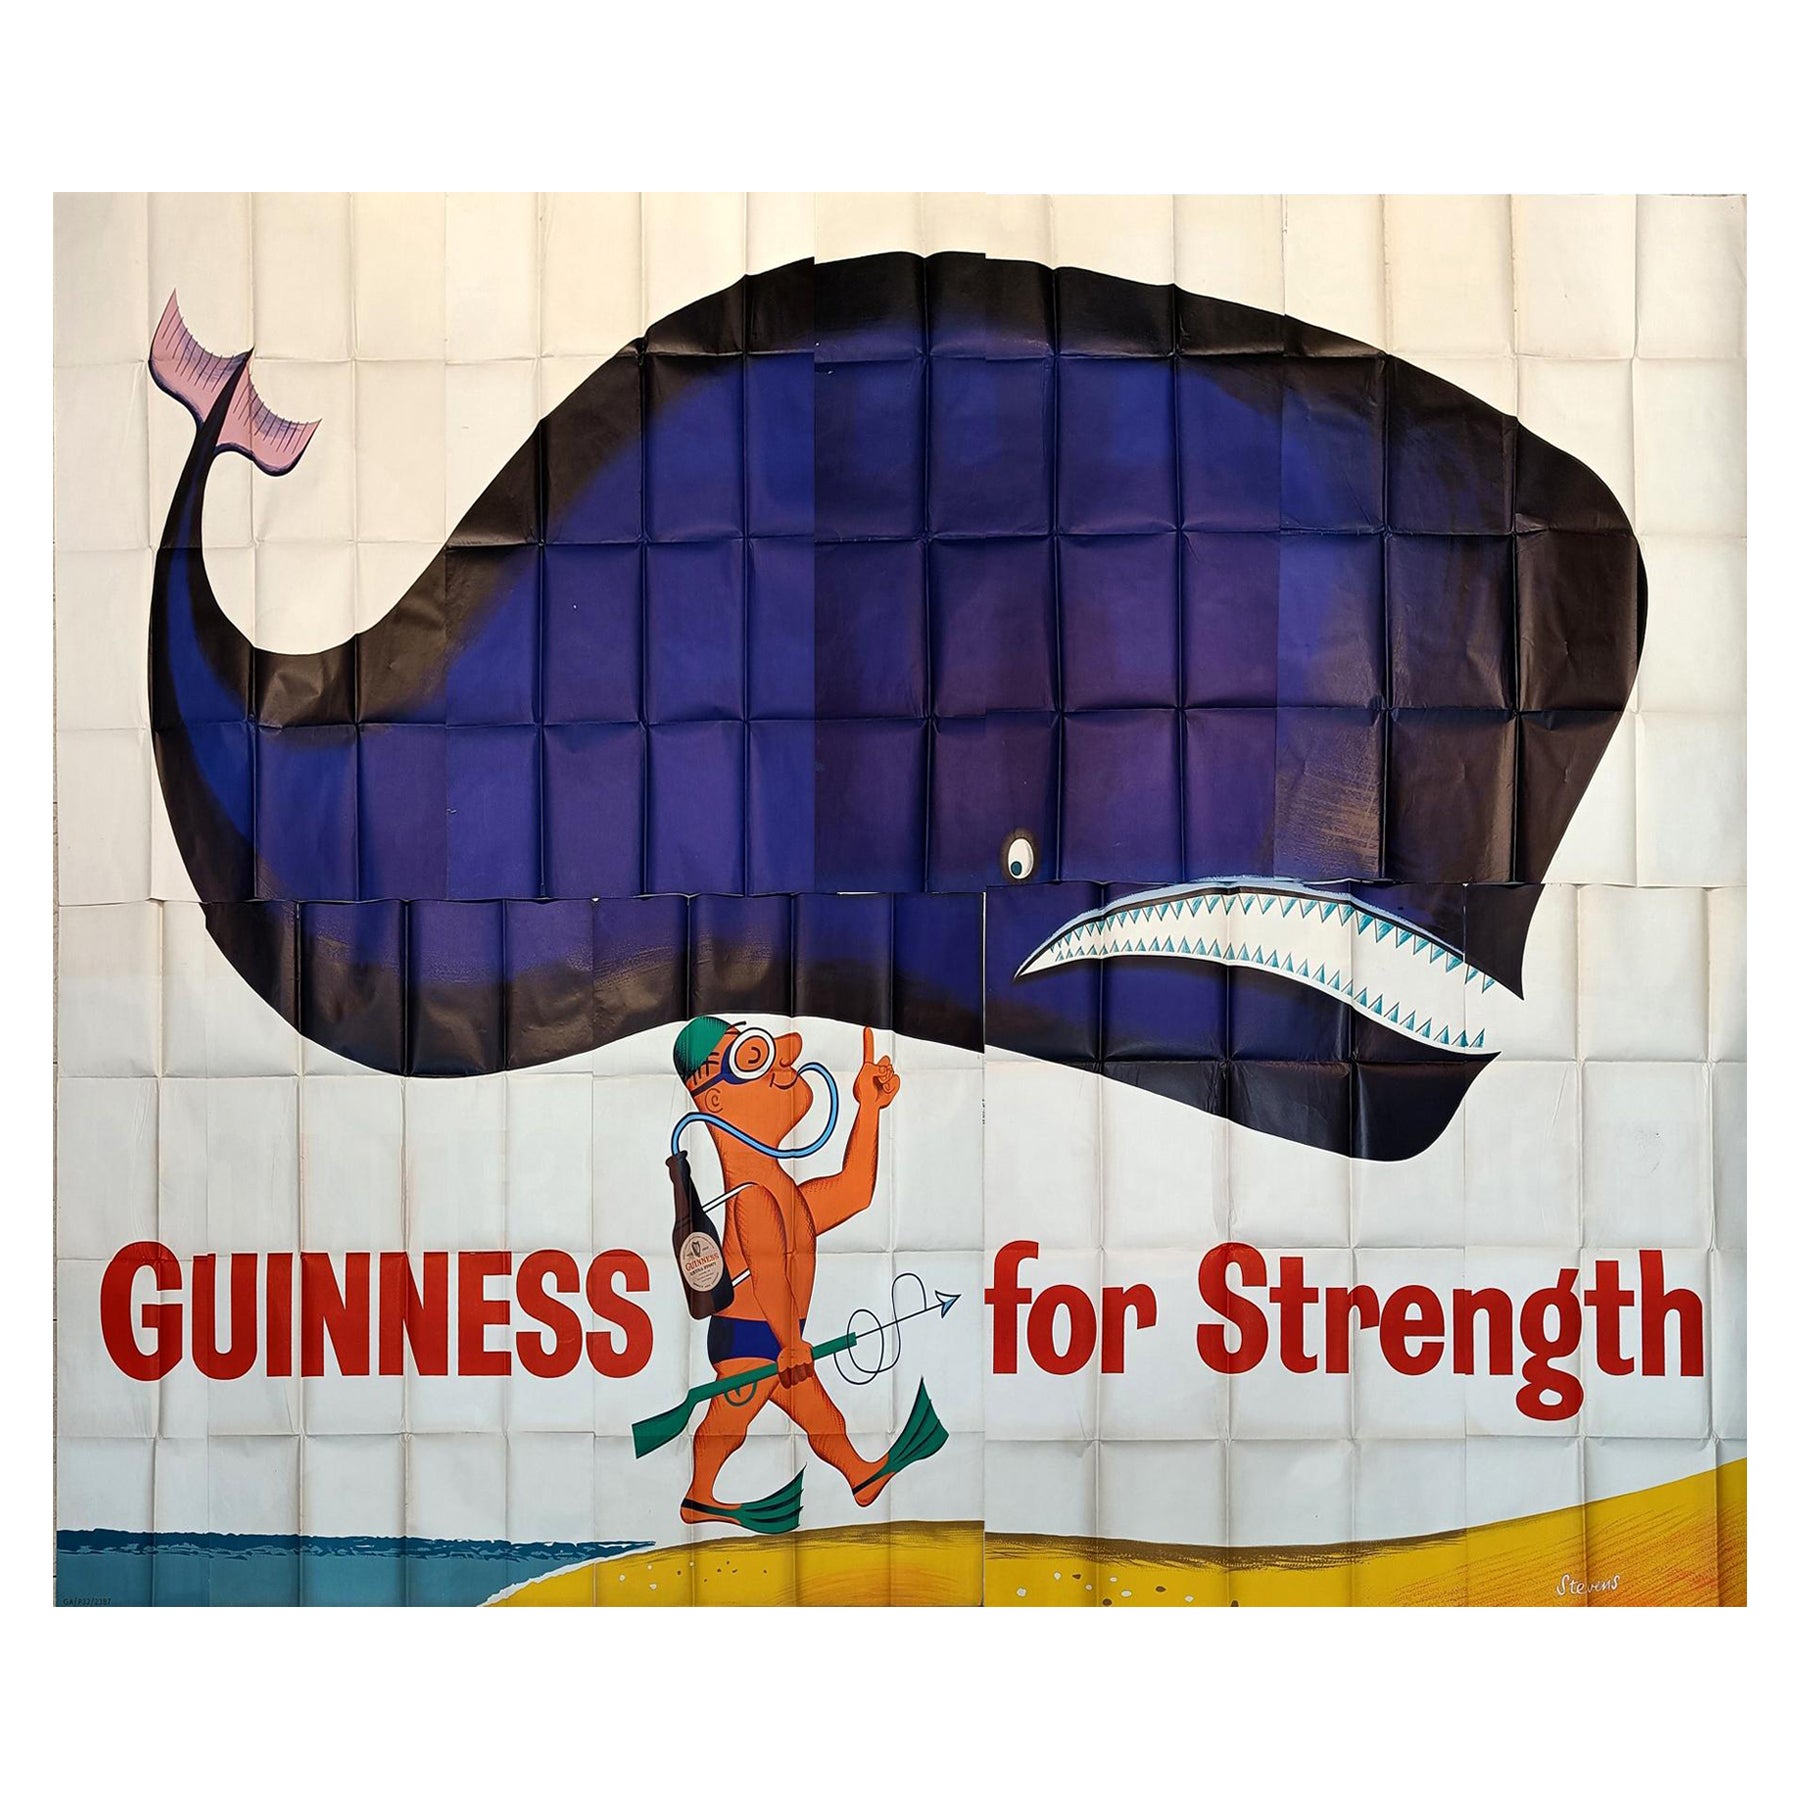 Großes Original-Vintage- Billboard-Poster Guinness für Strength, Scuba- Diver Whale